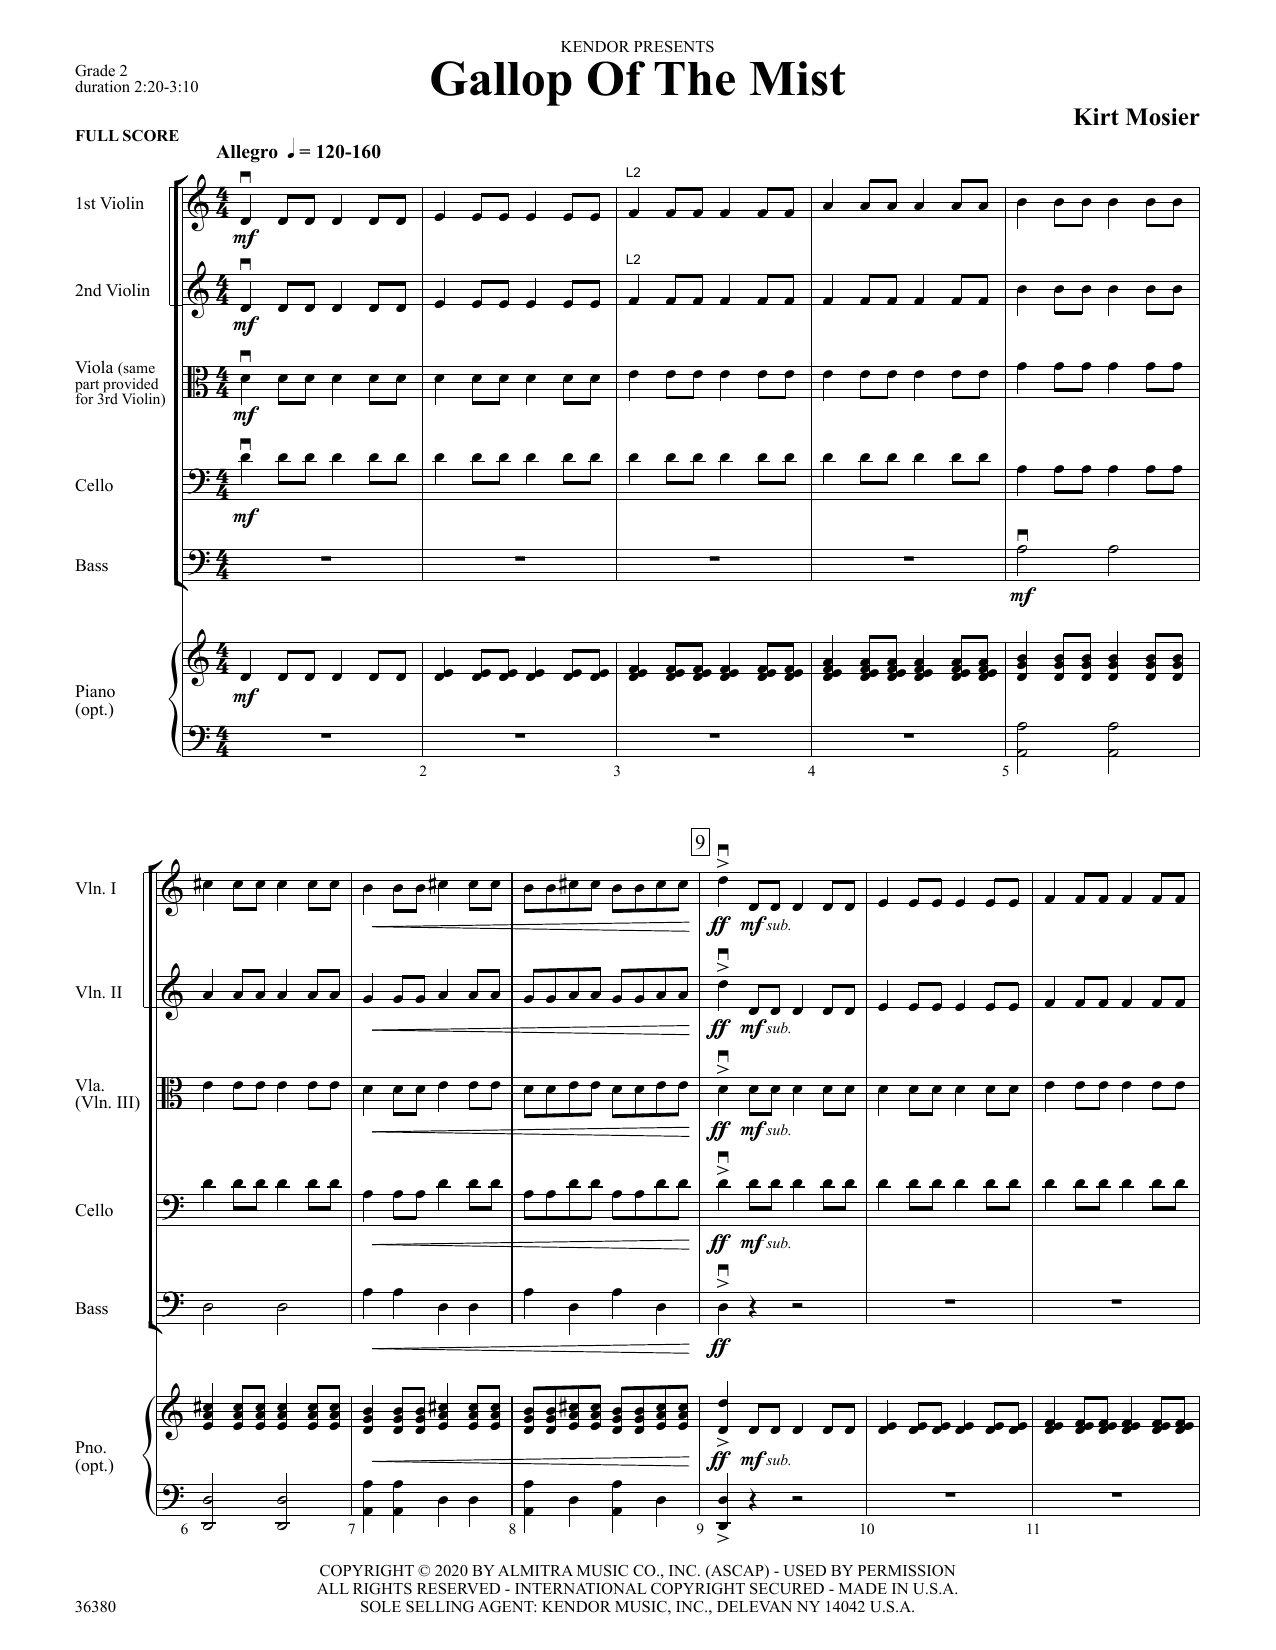 Gallop Of The Mist - Full Score (Orchestra) von Kirt Mosier